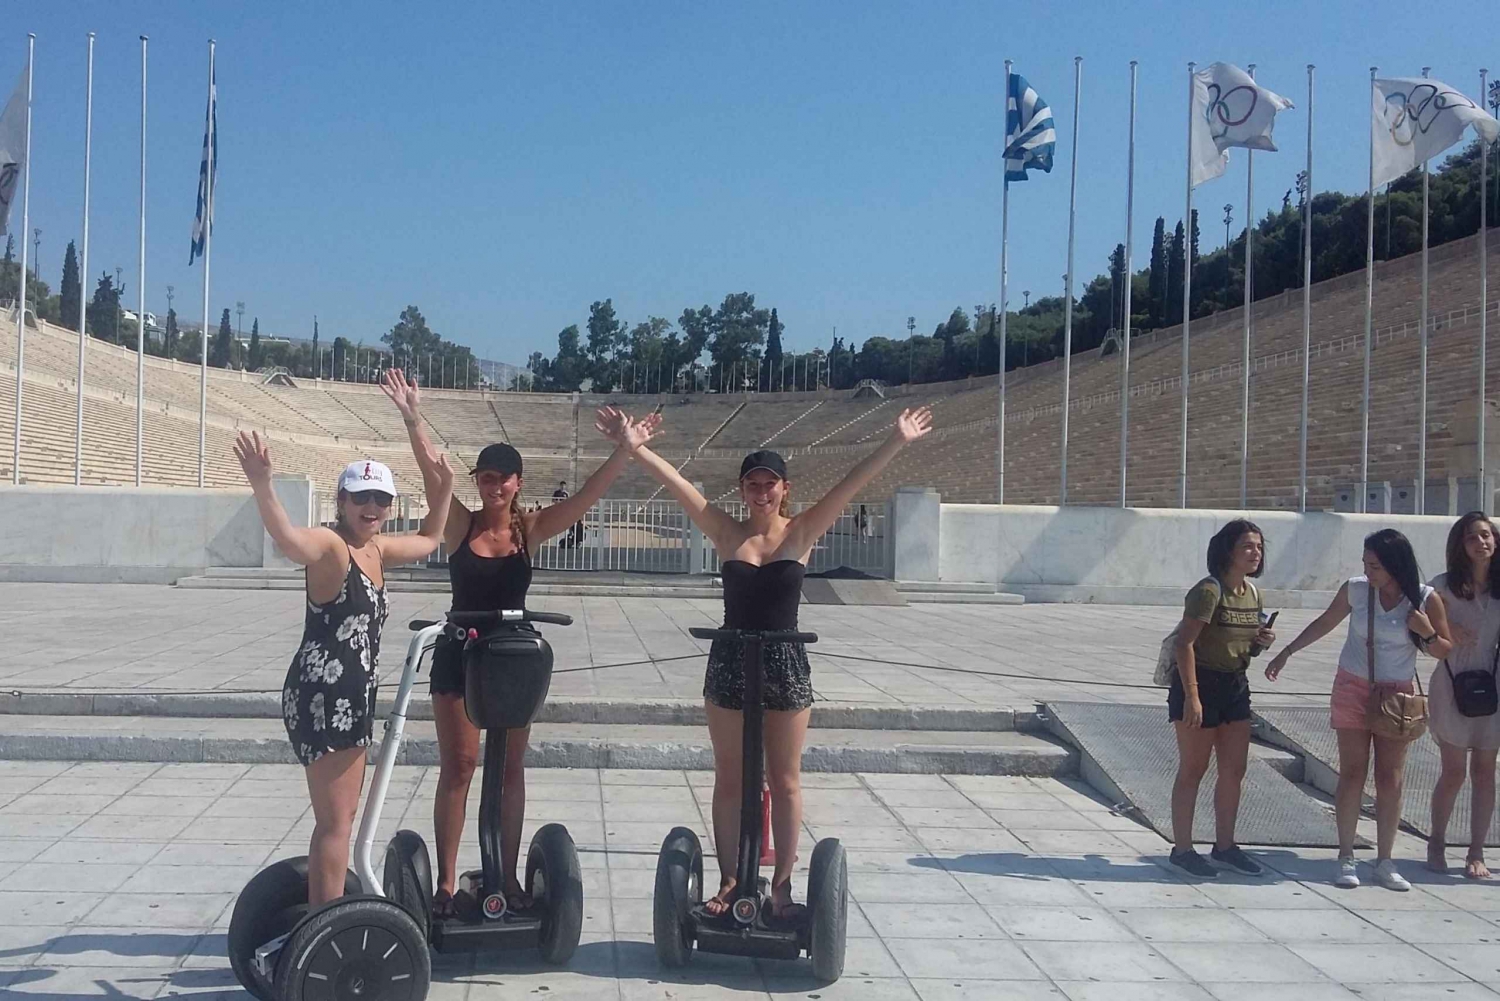 Tour de Segway para grupos pequenos pelo melhor de Atenas